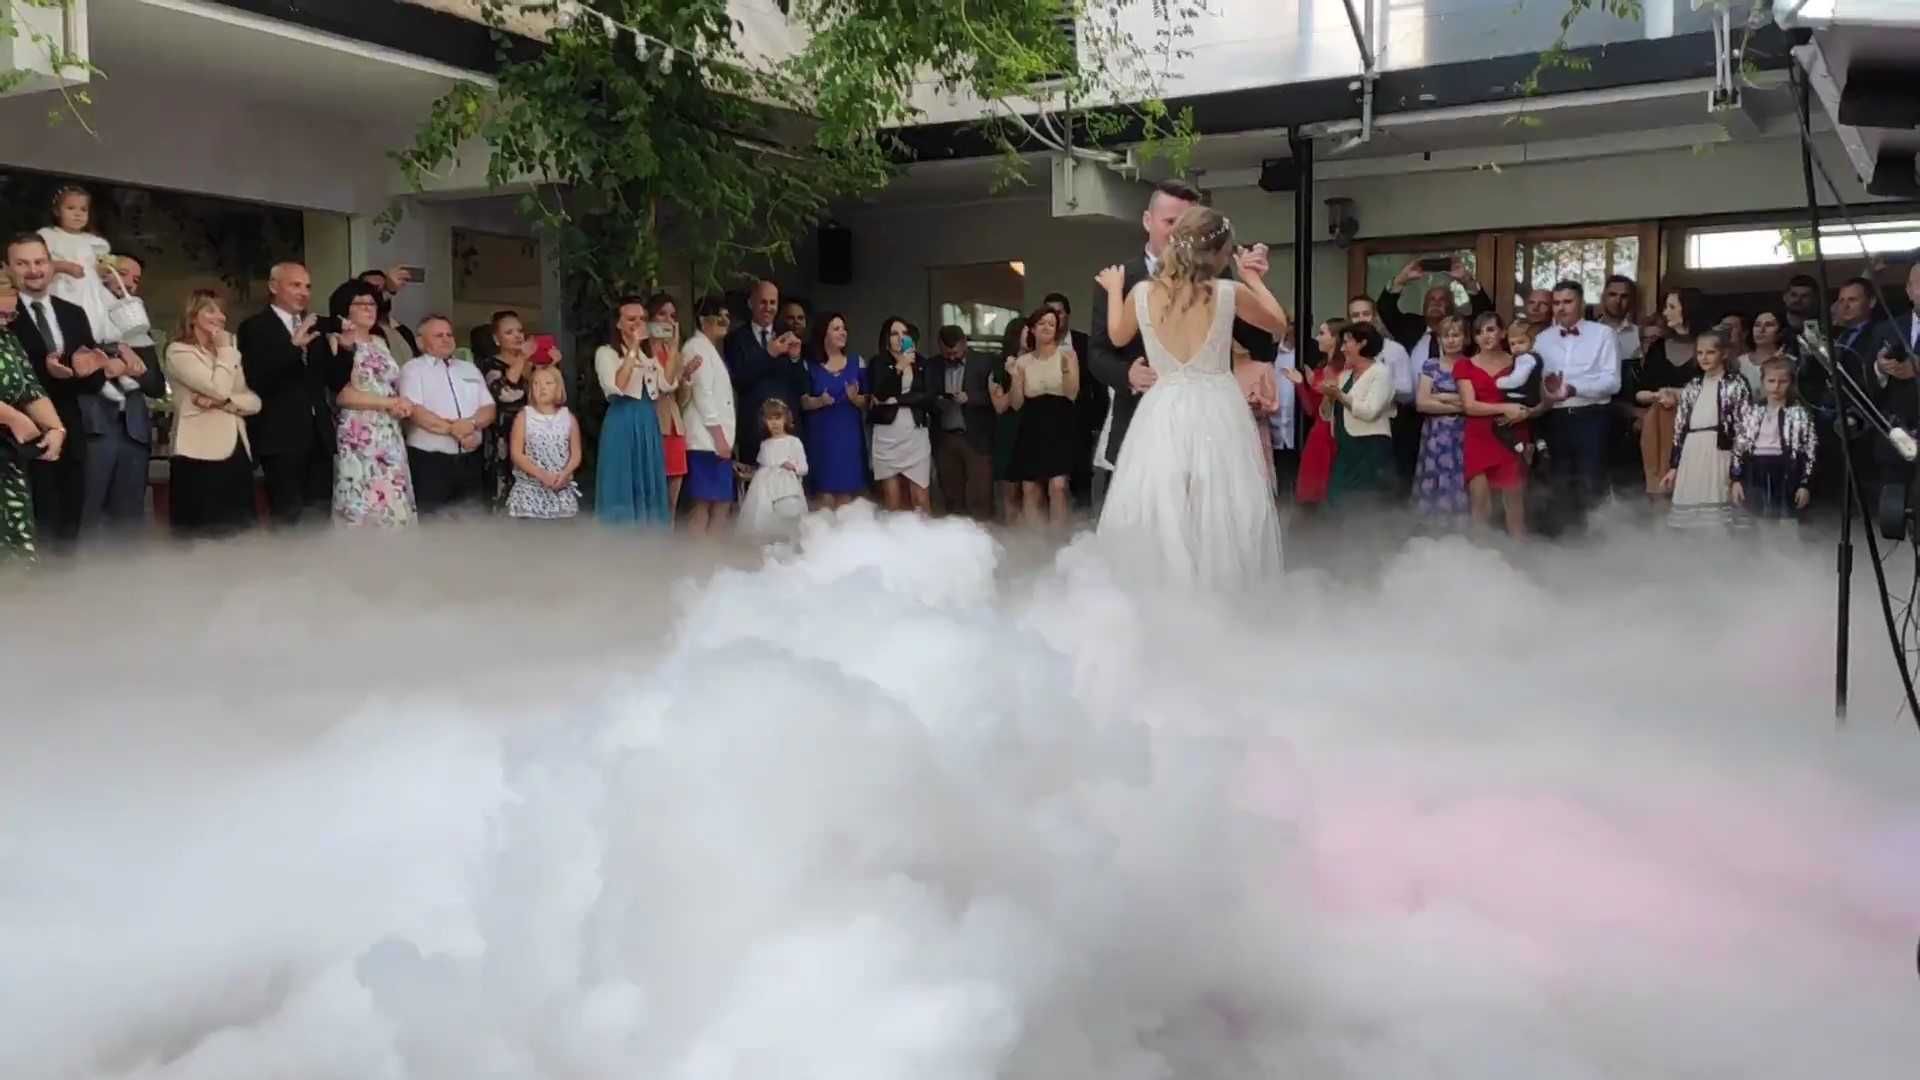 CIężki dym na wesele Wasz Pierwszy taniec w chmurach